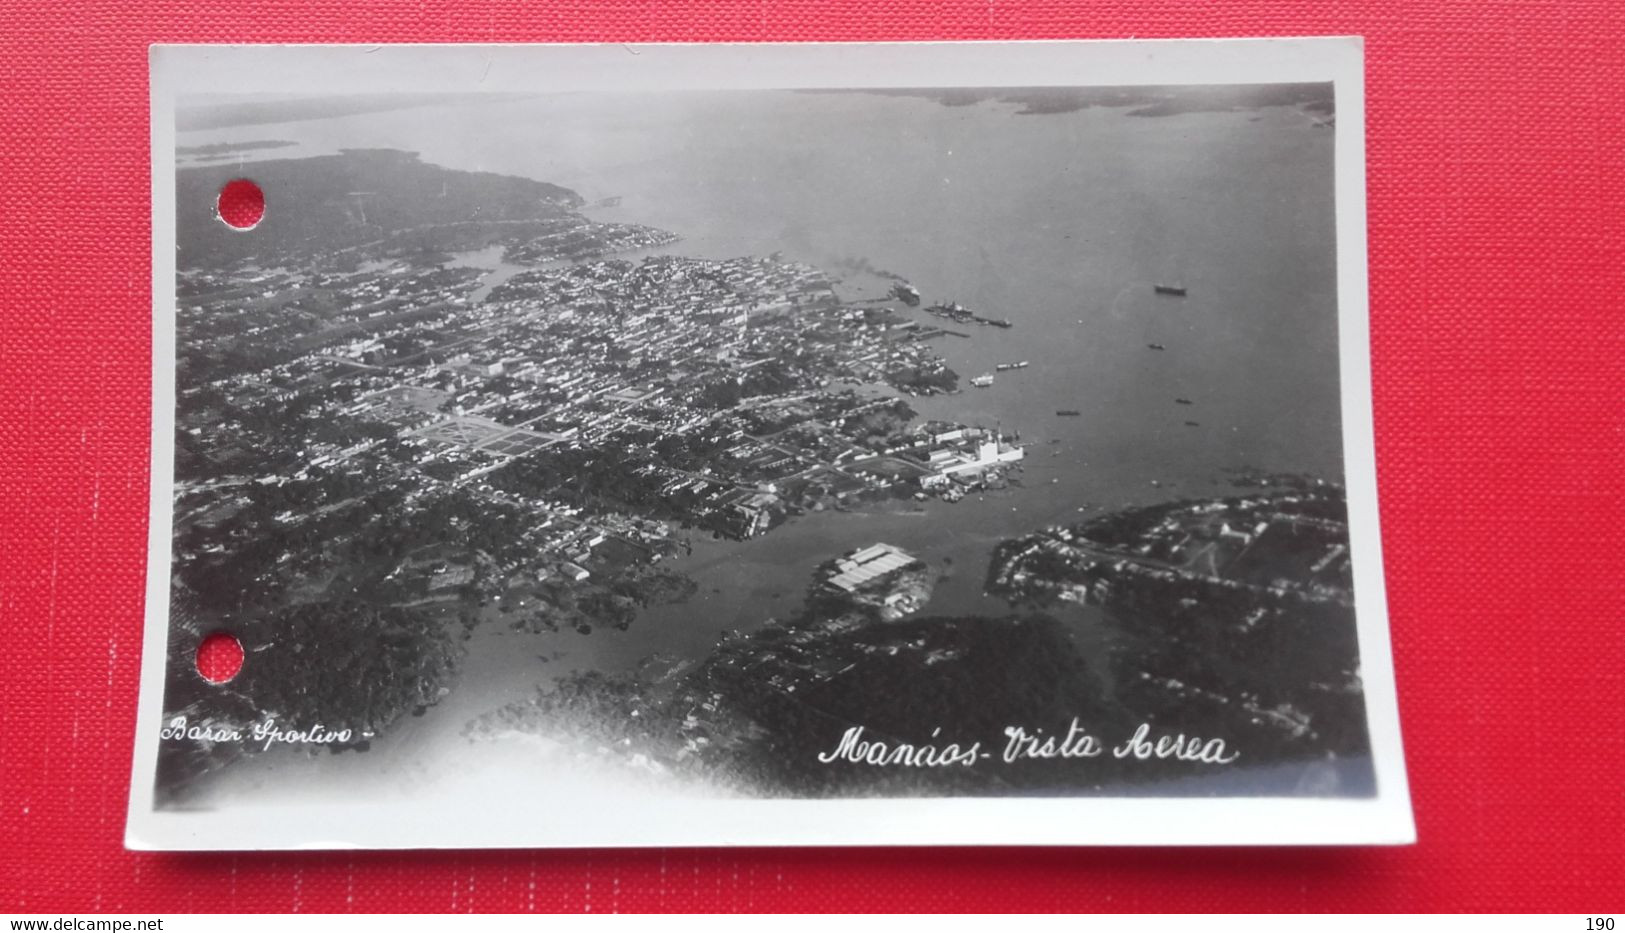 Manaus-Manaos.Vista Aerea.2 Postcards - Manaus